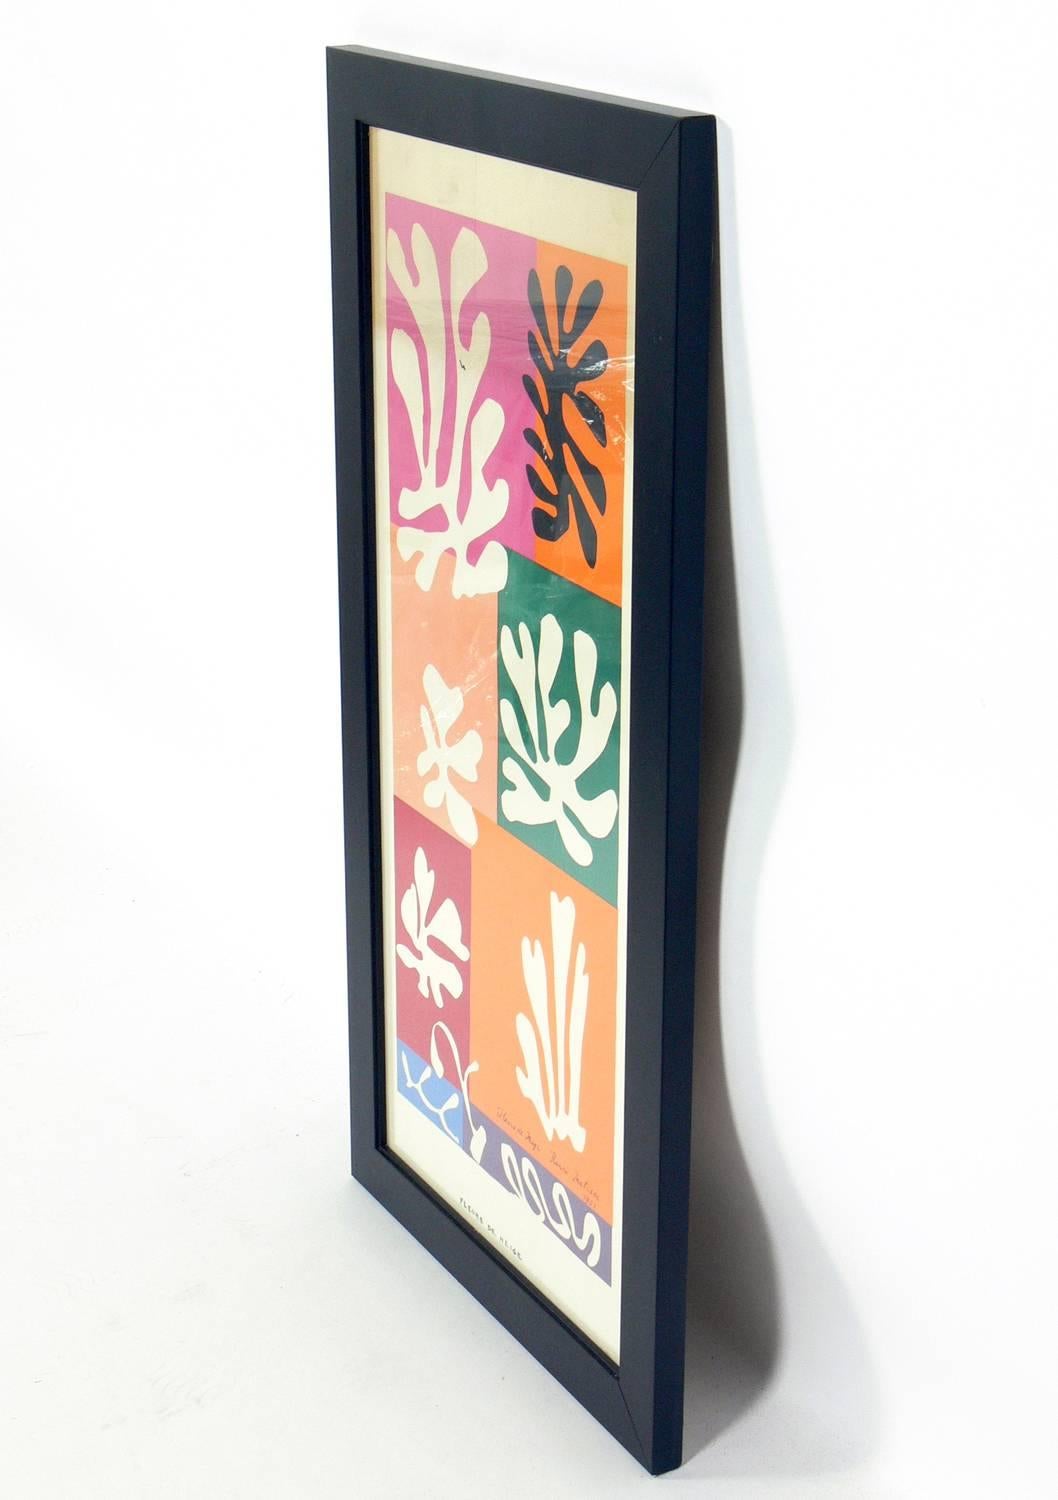 Lebendige Farblithografie nach Henri Matisse, ca. 1950er Jahre. Signiert, datiert 1951 und betitelt, alles innerhalb der Lithografie. Es ist in einem schlichten, sauber ausgeführten, schwarz lackierten Galerierahmen aus Holz unter Glas gerahmt.